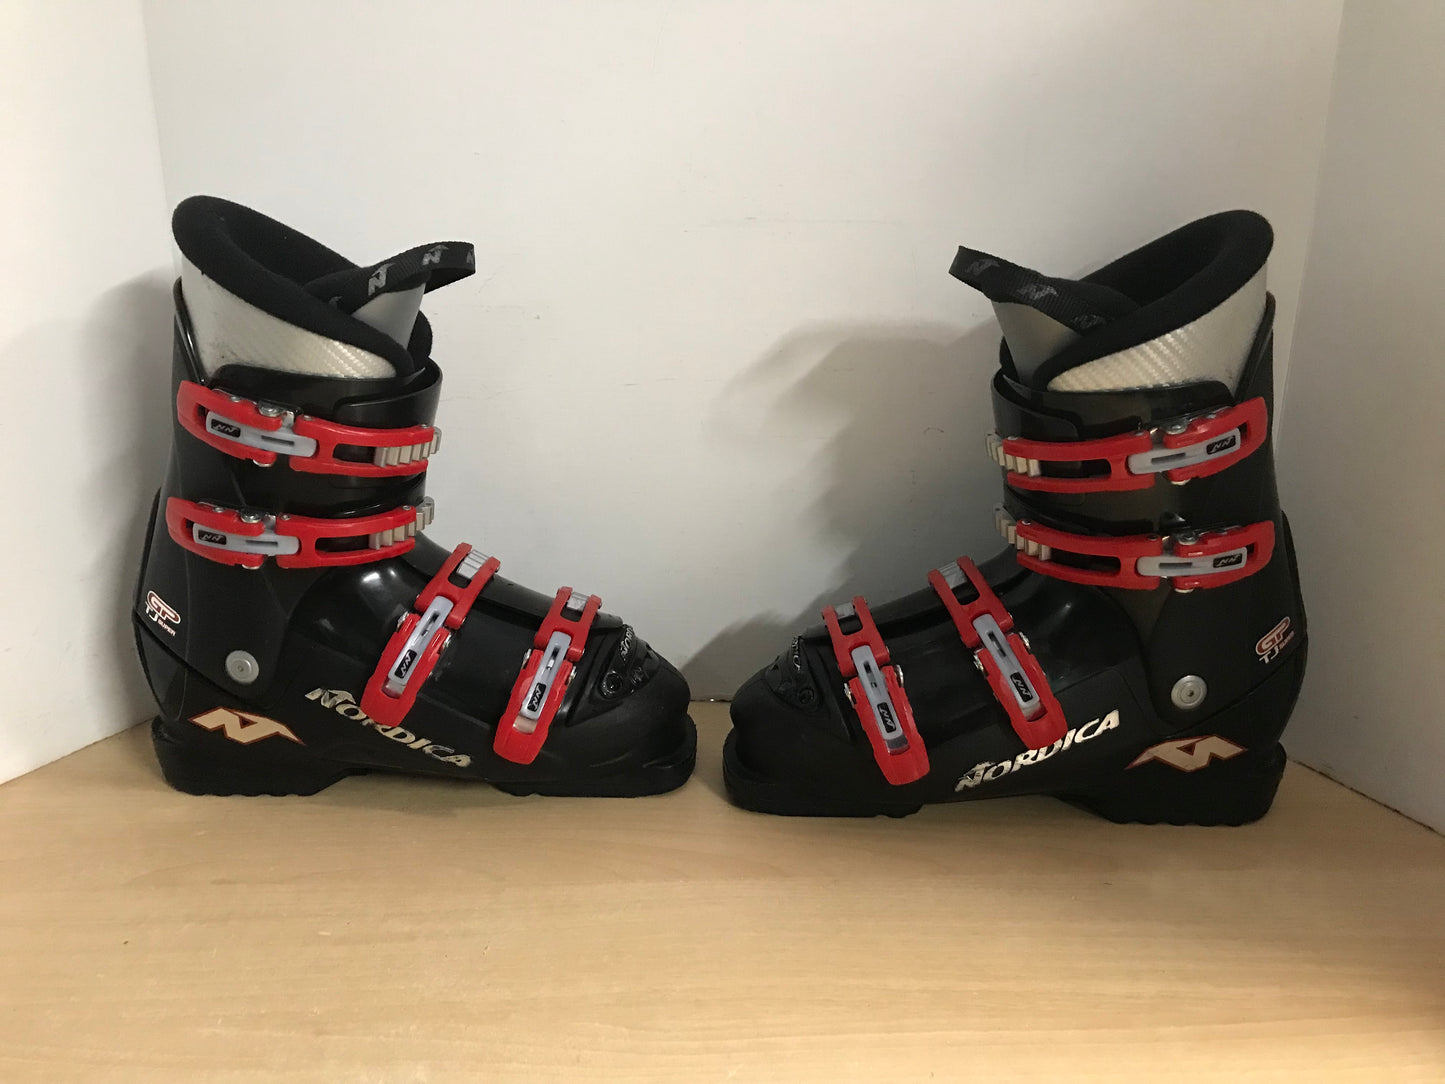 Ski Boots Mondo Size 25.0 Men's Size 7 Ladies Size 8 290 mm Nordica Black Red Excellent